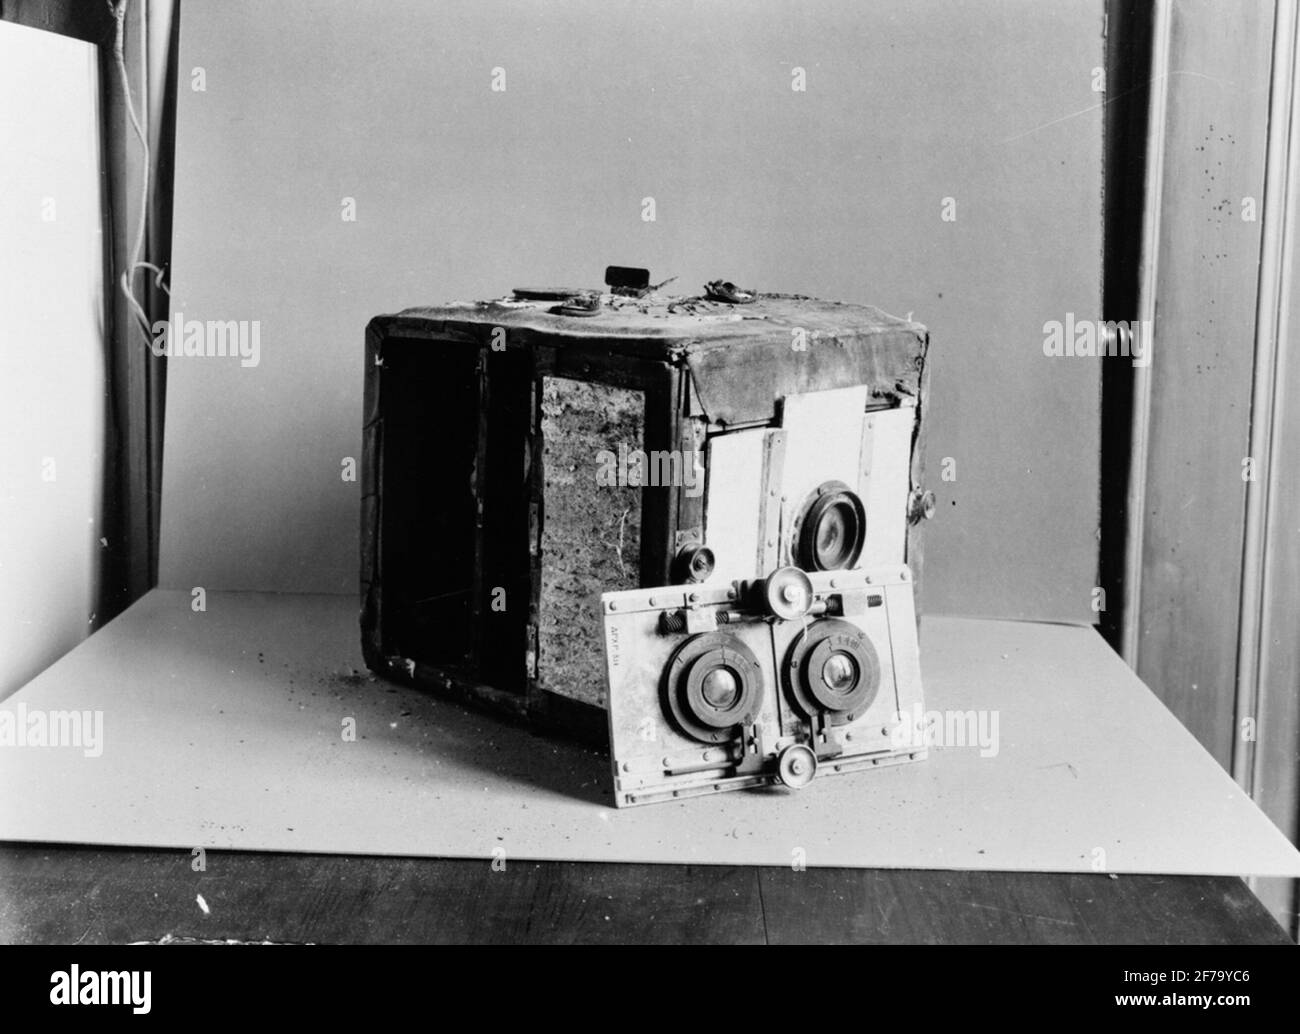 L'obiettivo di copia stereo dell'apparecchio fotografico (fotocamera) alla fotocamera era: 2 OBJ. Montato su una scheda obj lasca. Stampato 'Aées-PXP-1896'. Obj. Voro contrassegnato con 'C.P. Goerz', Berlino, Doppel Anastigmat. D.R.P. N. 24046. Serie III / 0 F. 120 m / m. Foto Stock